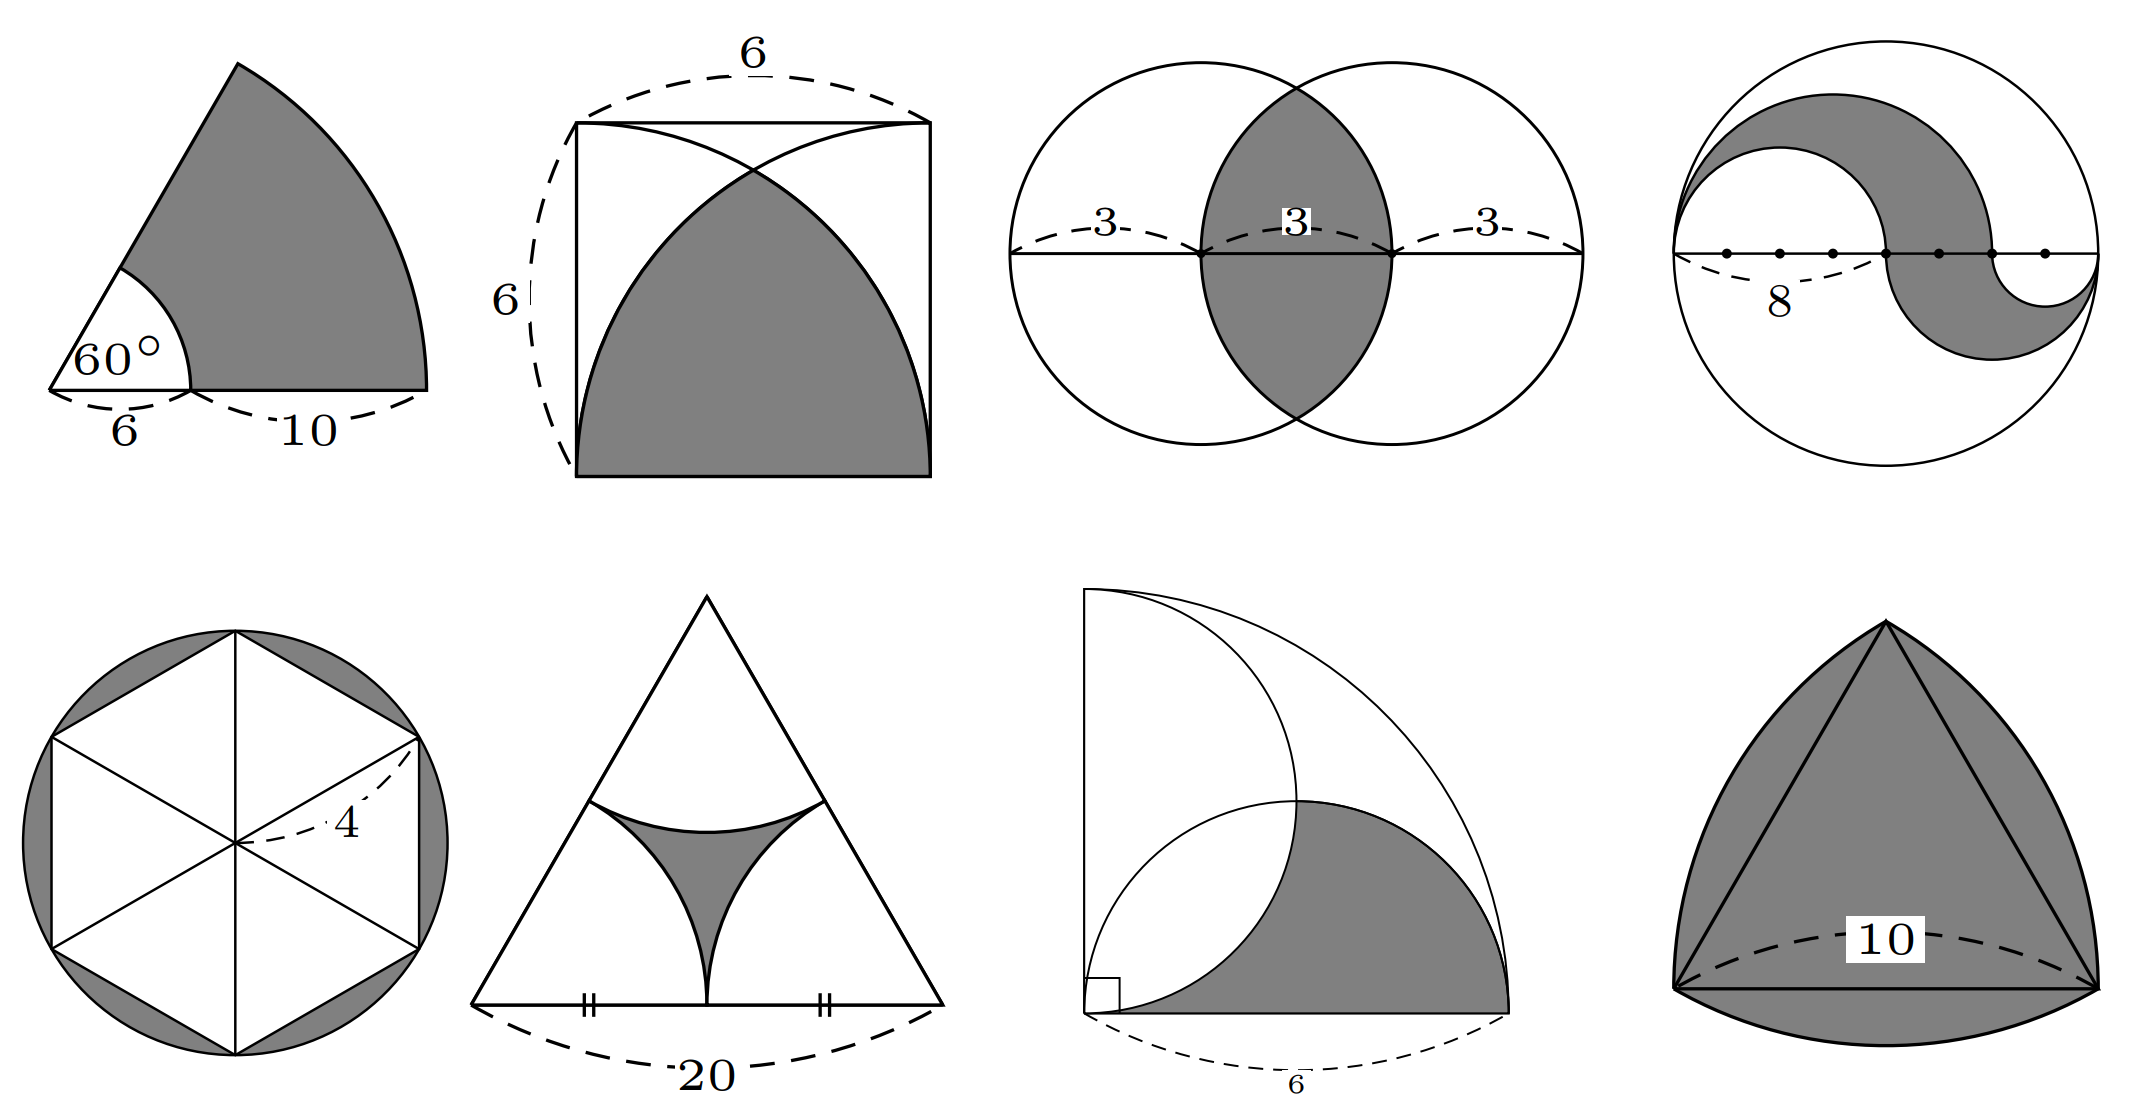 tikz 绘制圆弧构成的各种求面积的阴影图形